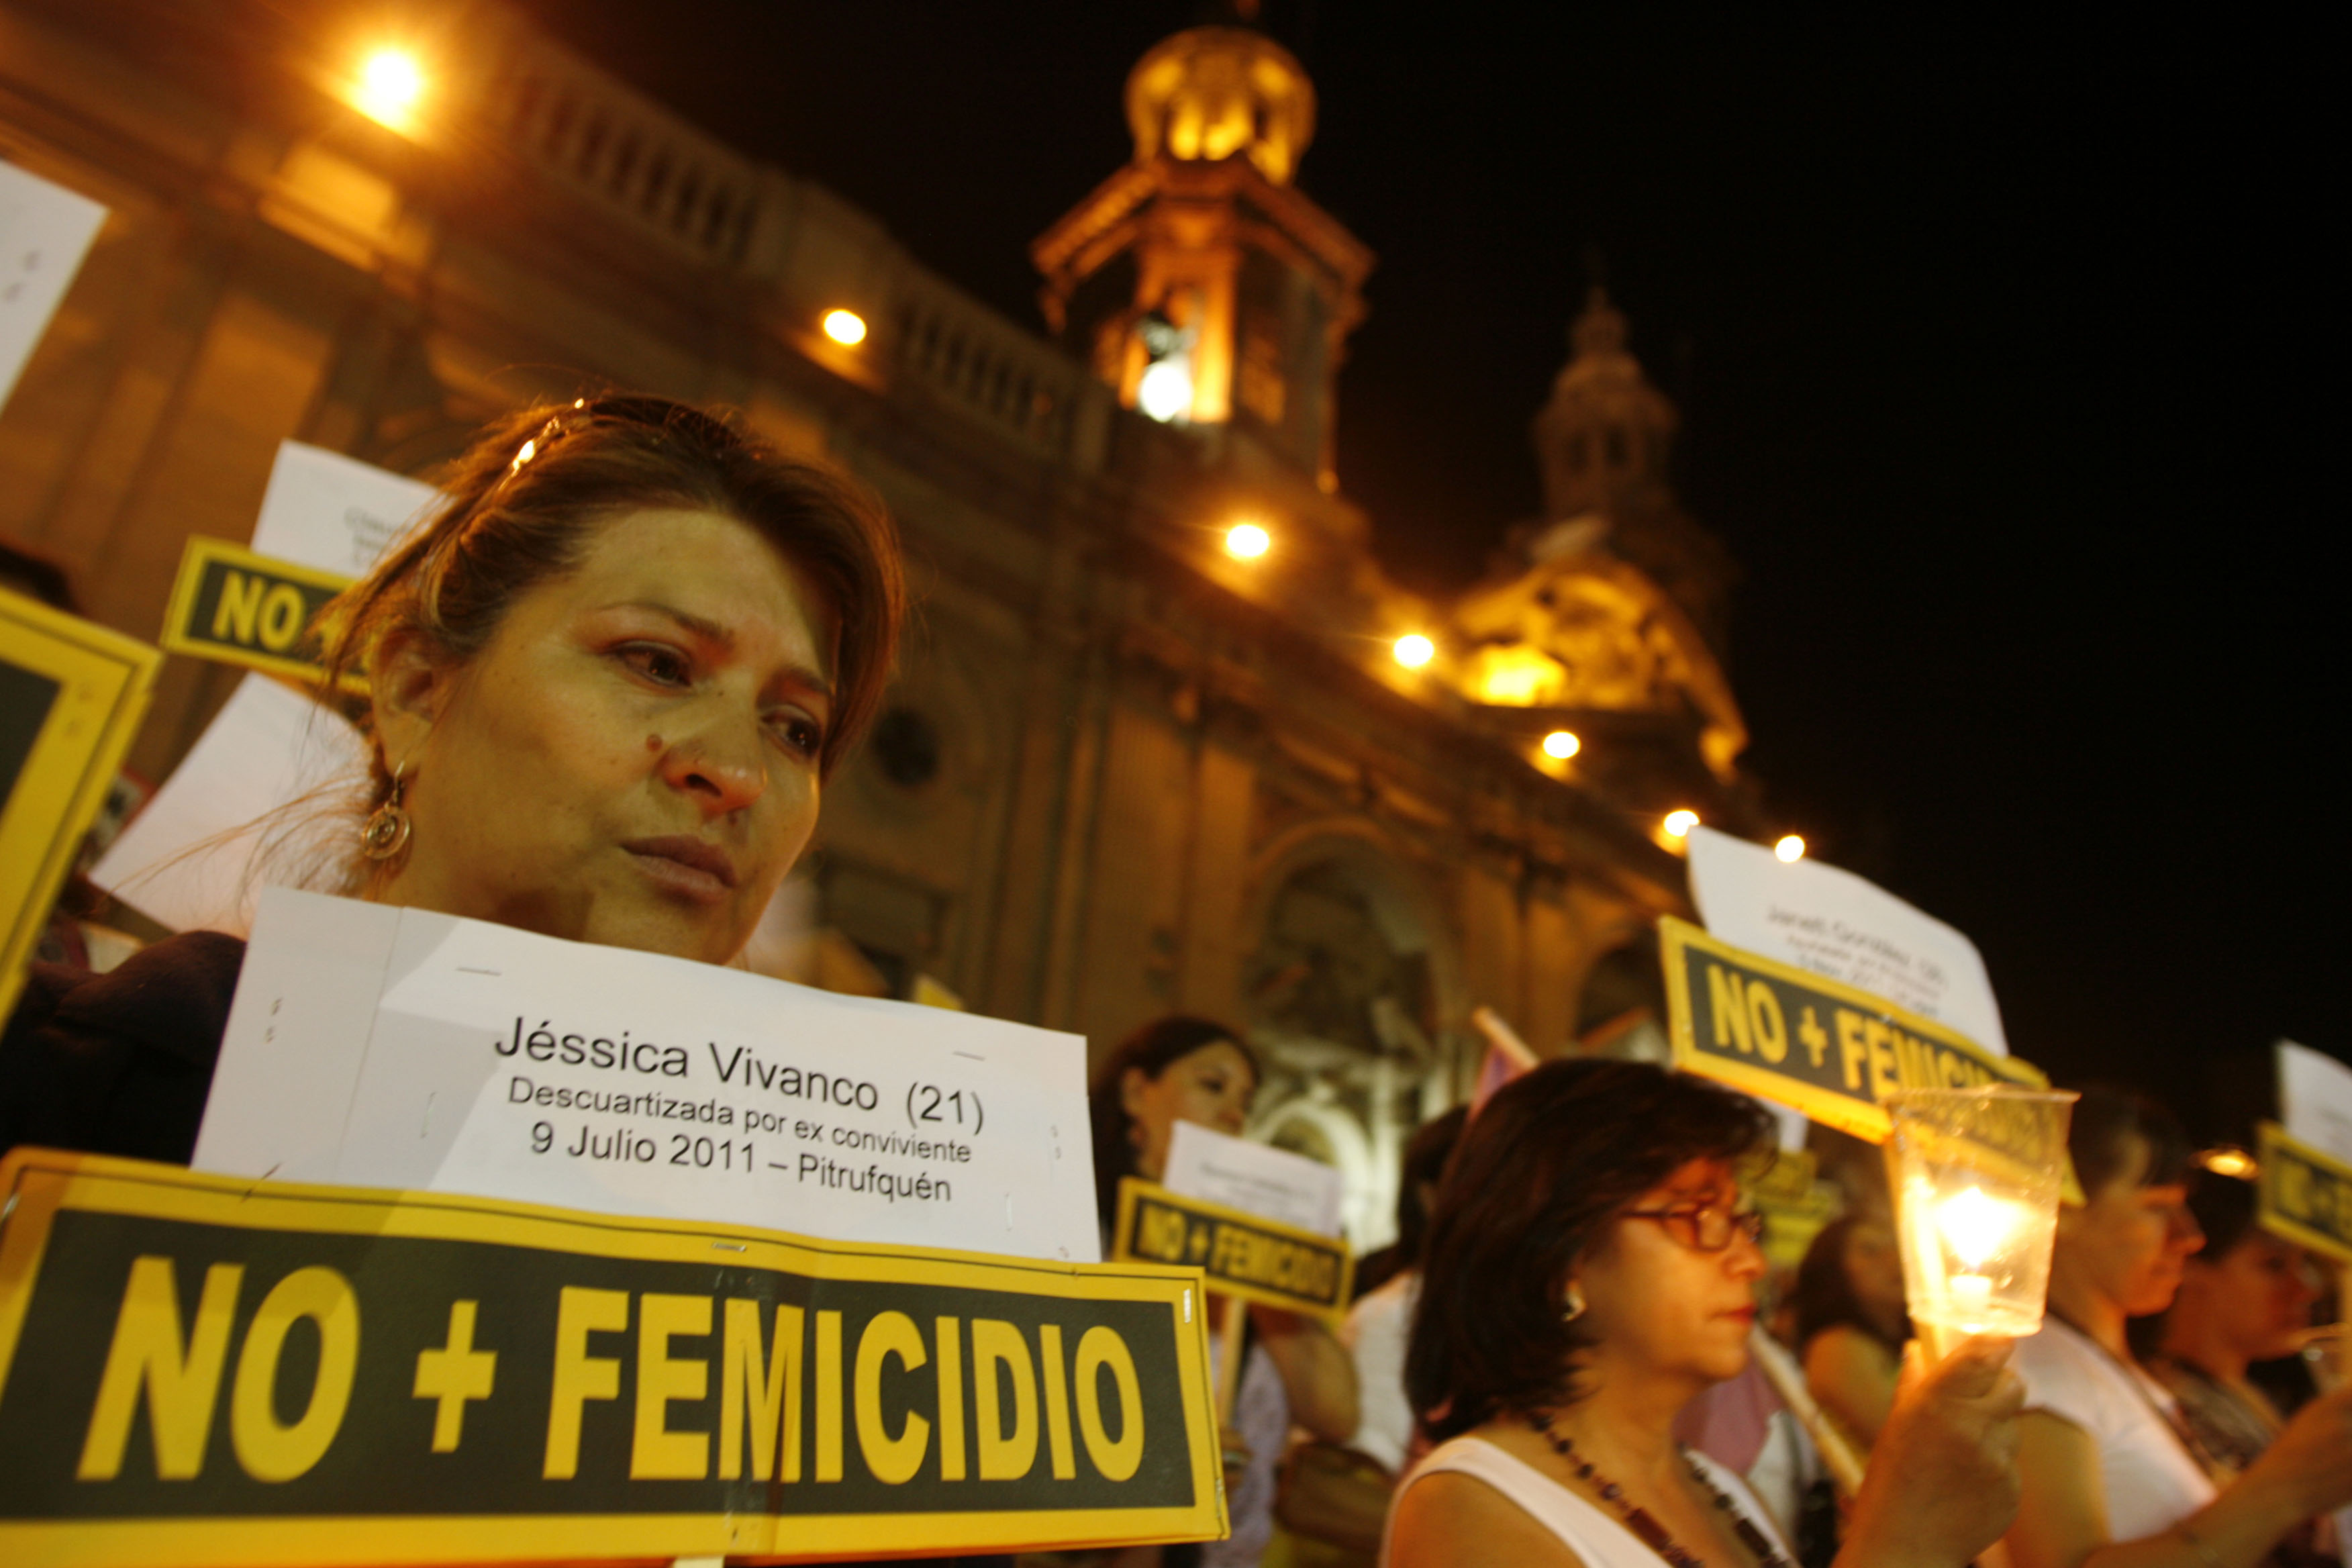 #No+Femicidios: Tres mujeres asesinadas en menos de una semana